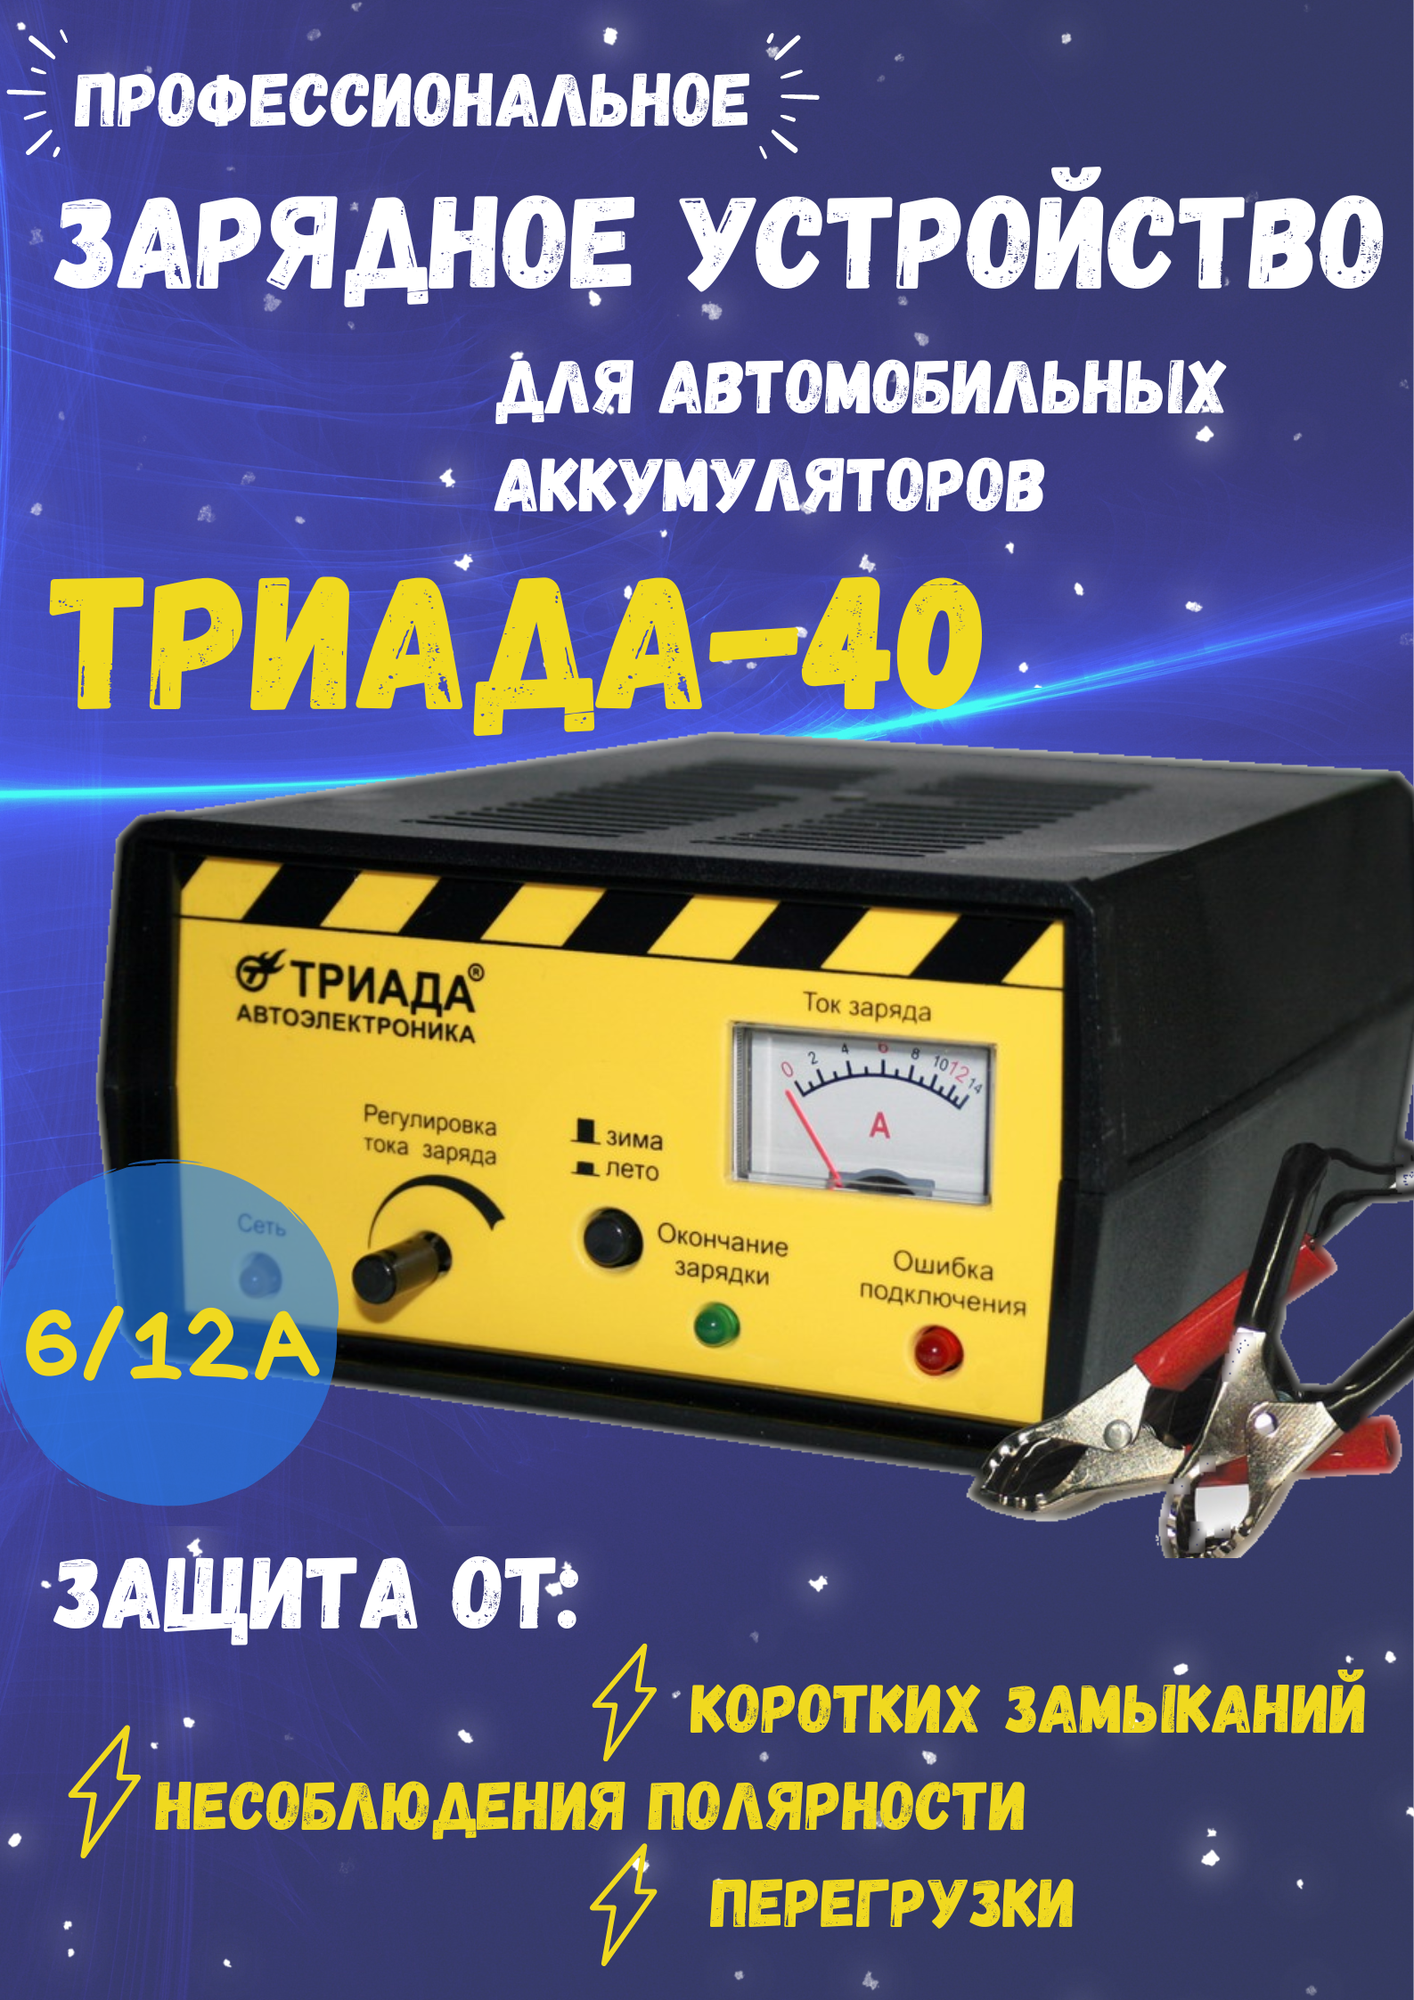 Профессиональное импульсное зарядное устройство "Триада-40" 2 режима работы: 6/12 А зима/лето